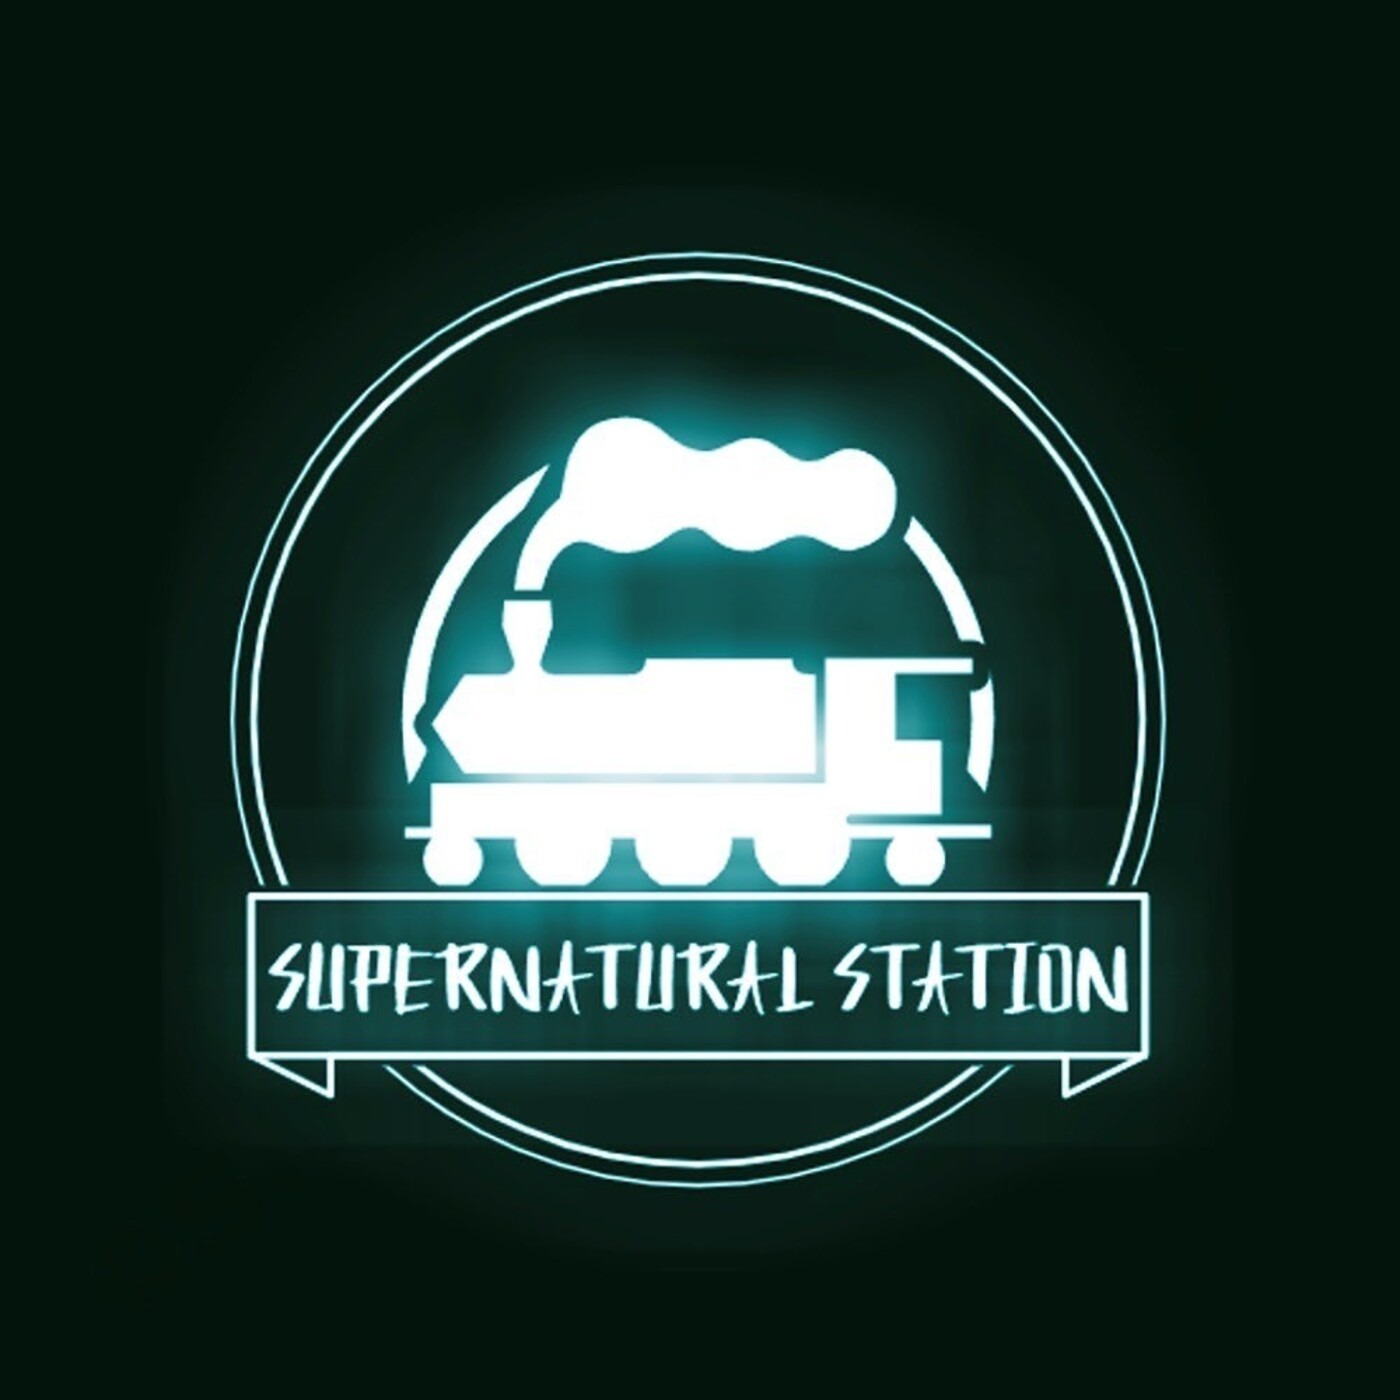 Supernatural Station Podcast